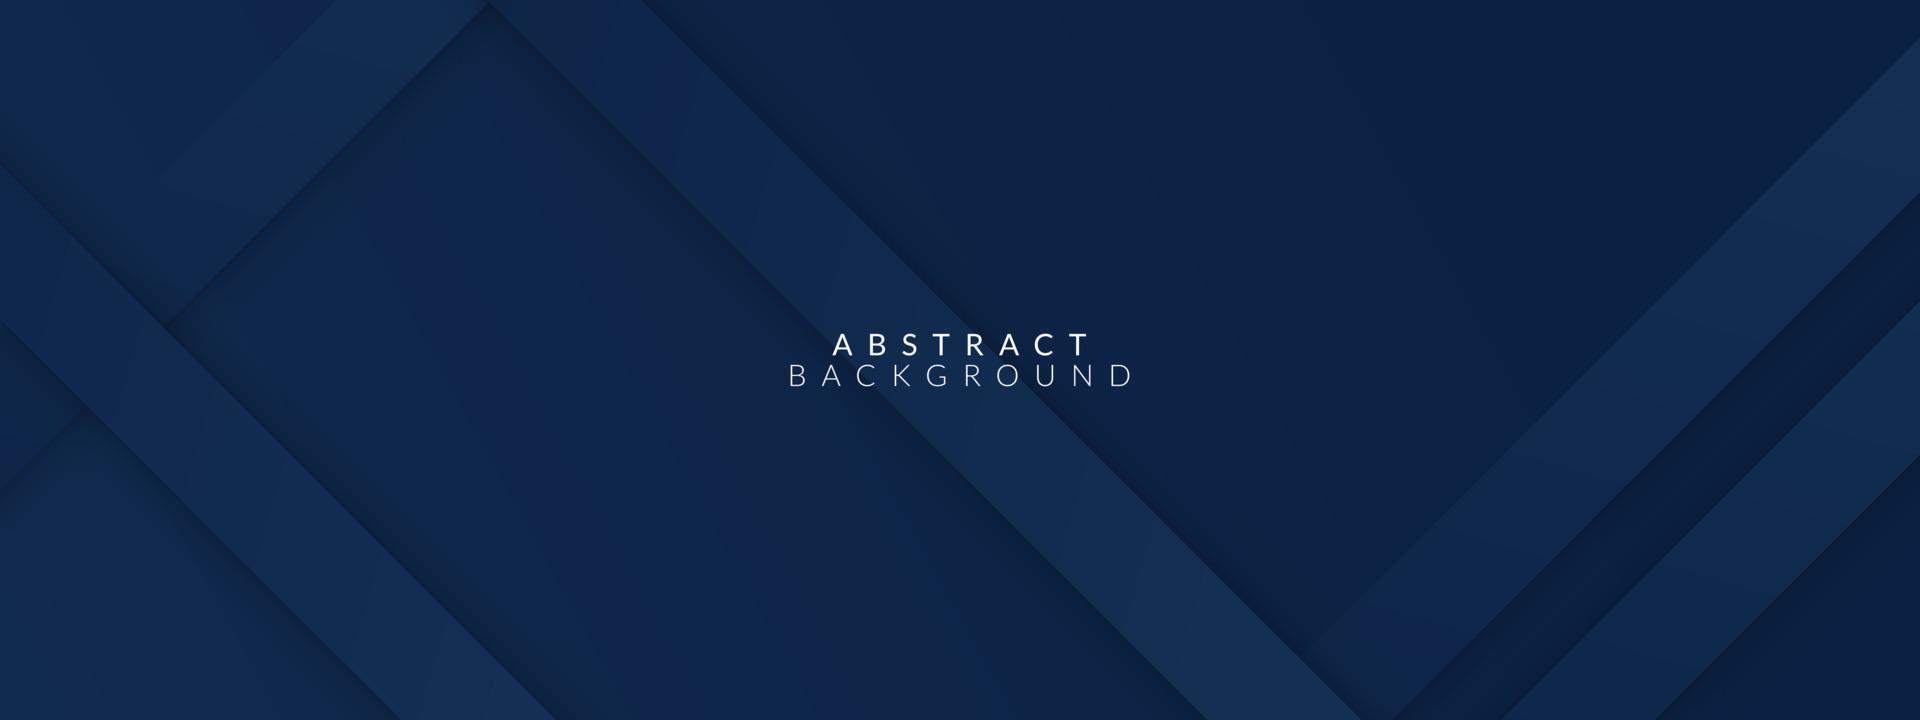 moderner dunkelblauer papierhintergrund mit dunkler 3d-geschichteter liniendreieckbeschaffenheit vektor